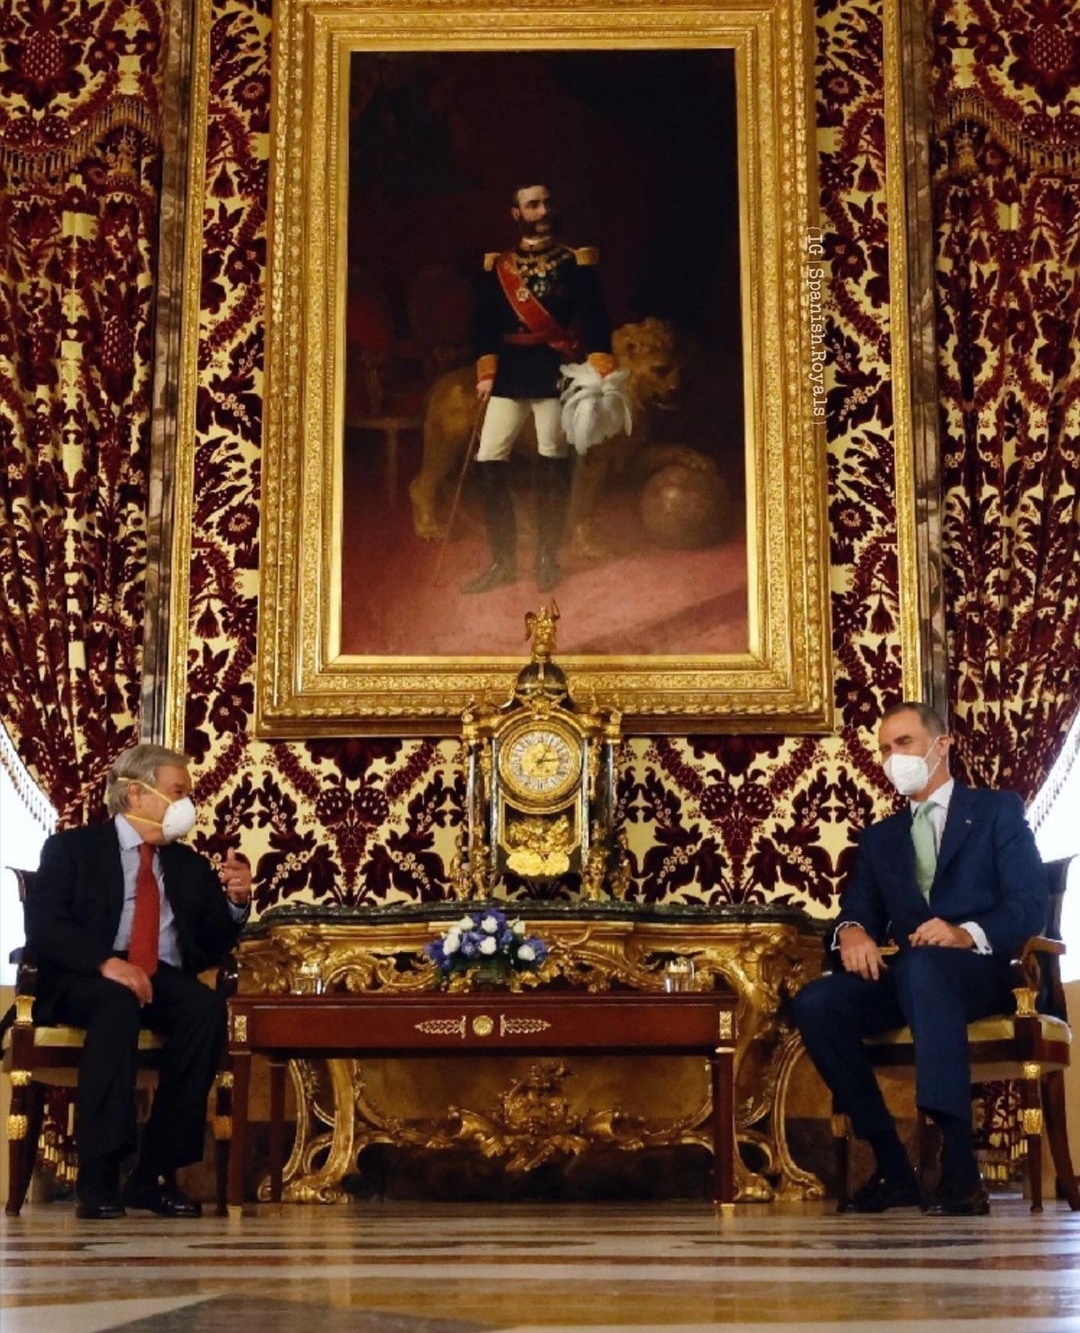 الملك فيليب السادس وأنطونيو غوتيريش- الصورة من حساب Spanish Royals على إنستغرام.jpg